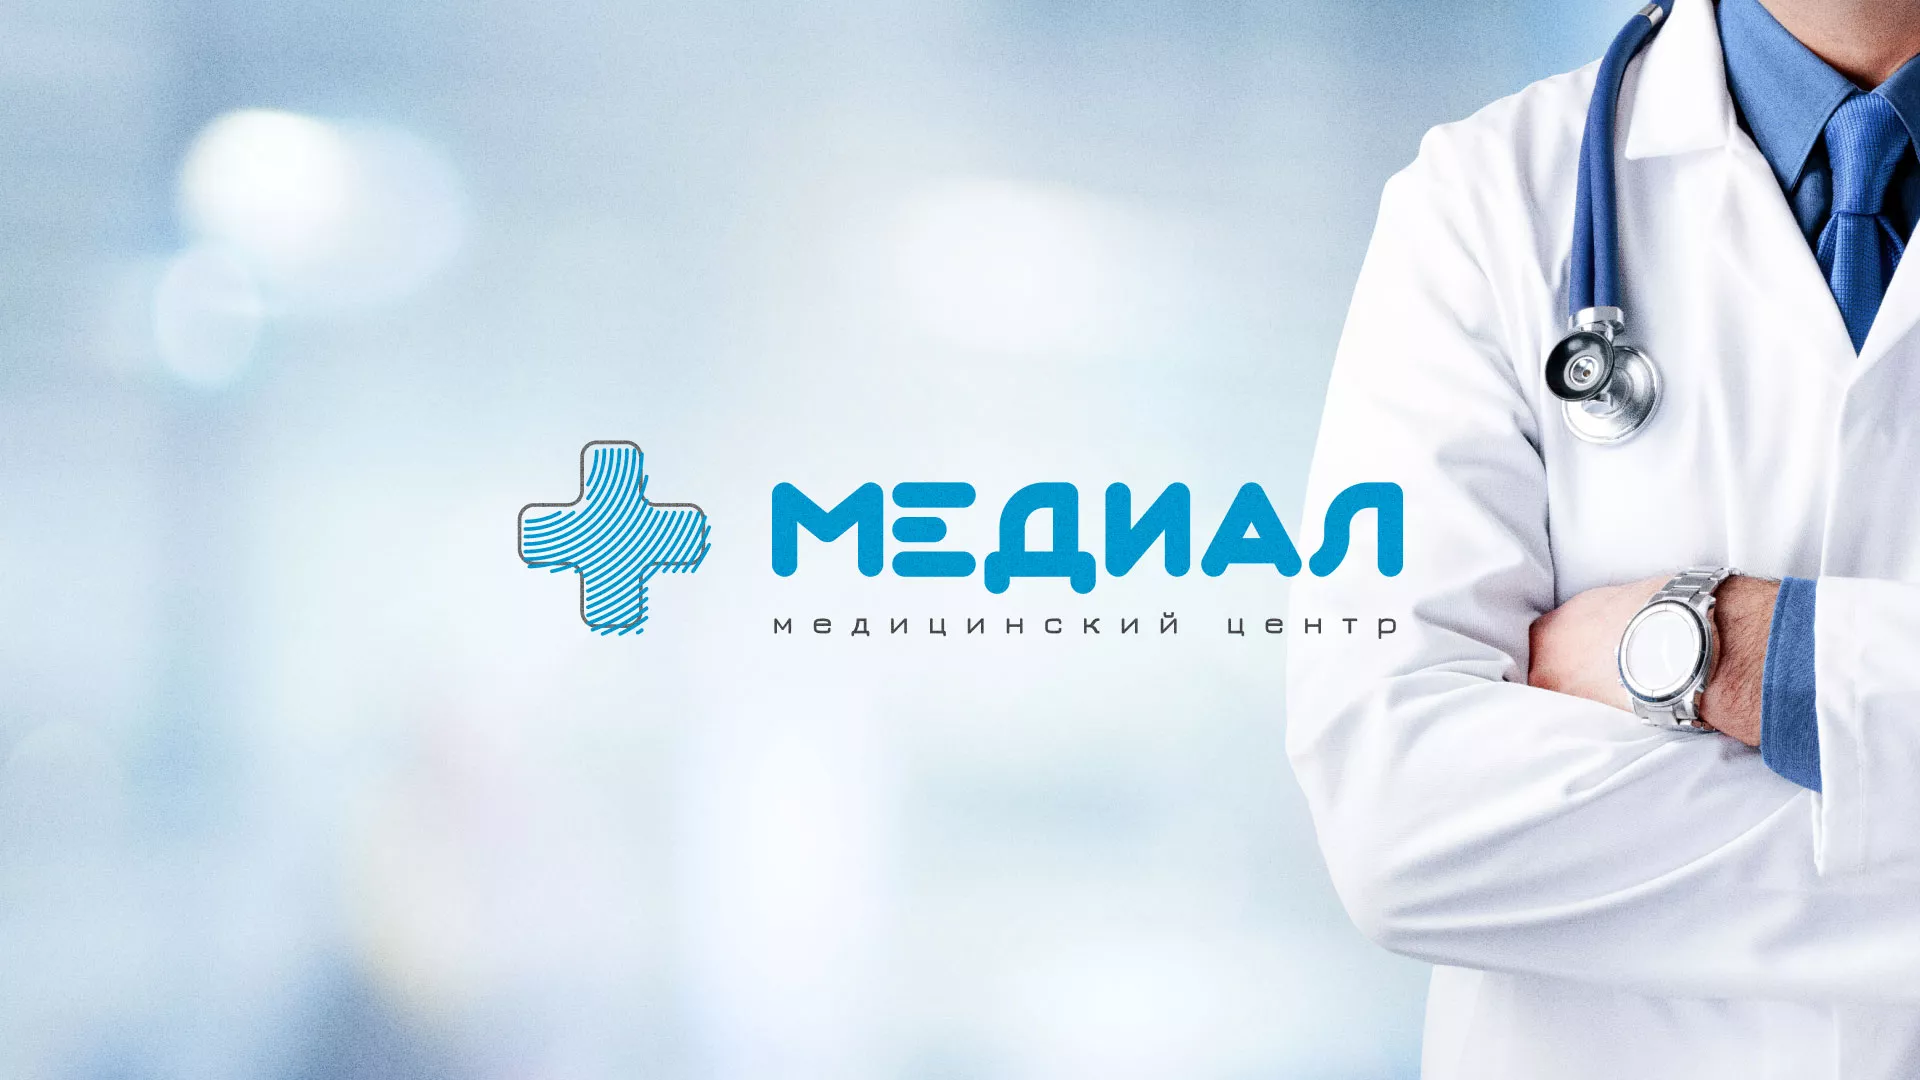 Создание сайта для медицинского центра «Медиал» в Вязниках